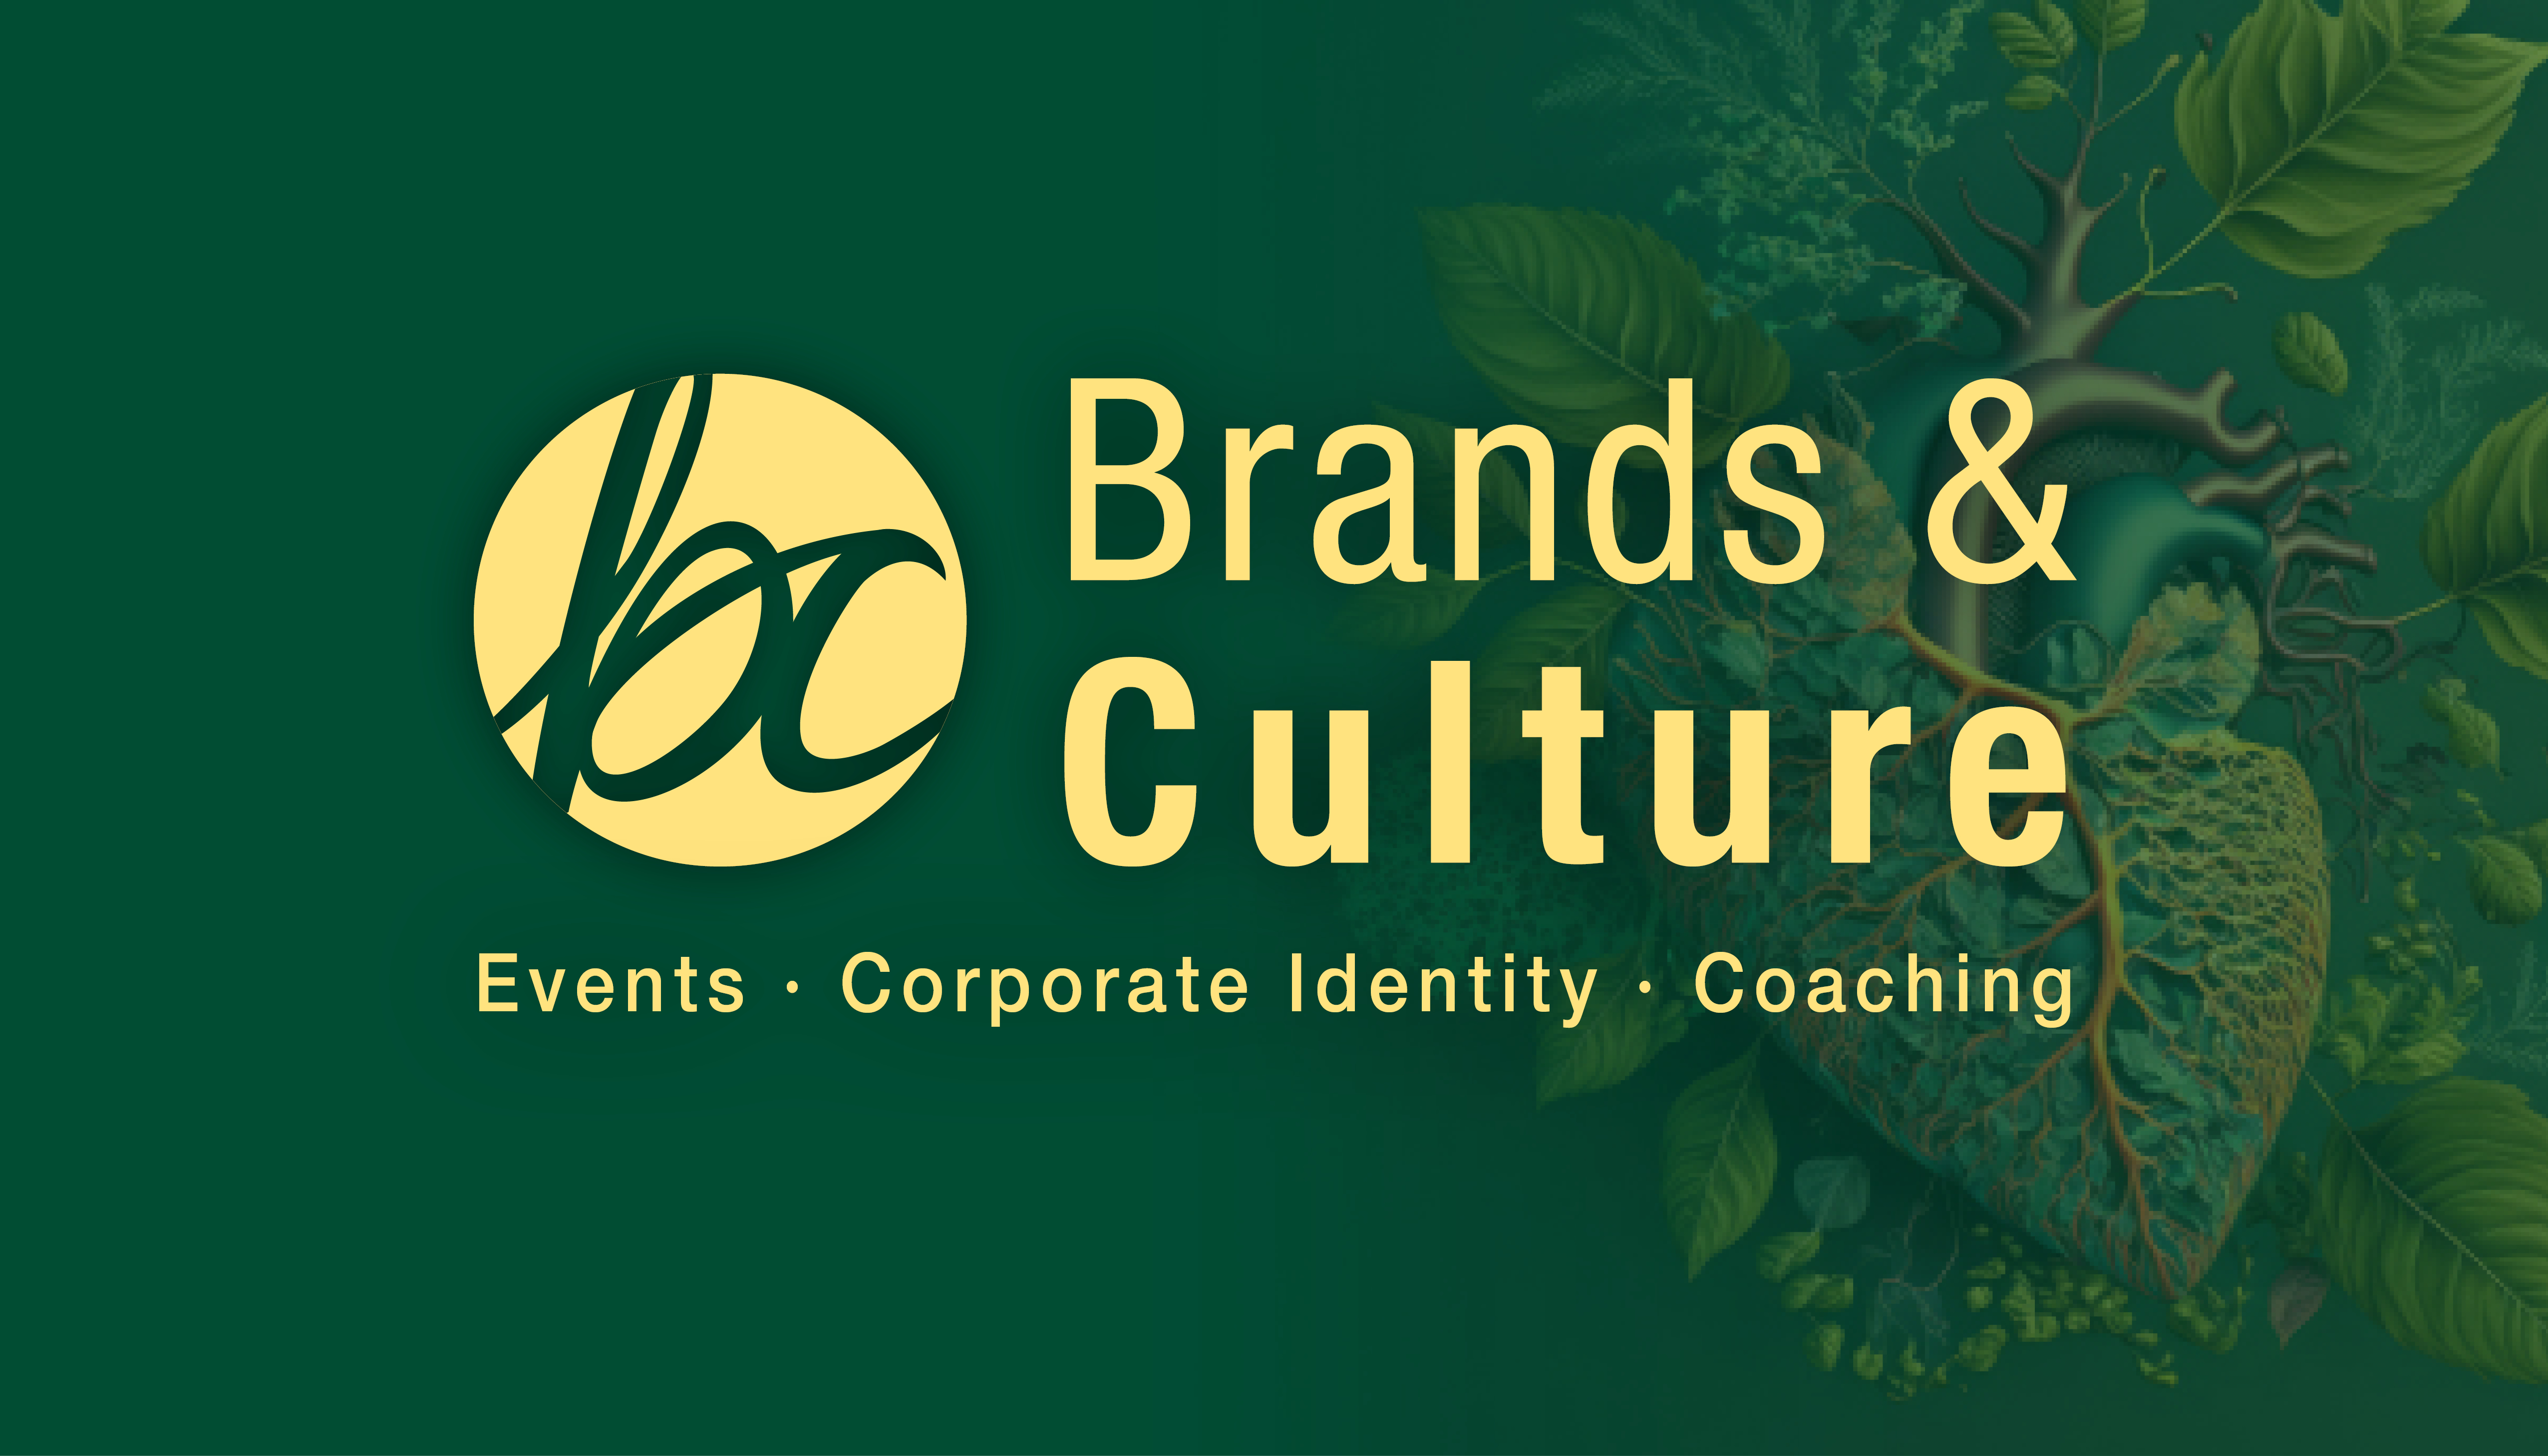 Brands & Culture, Ausgründung von Serimed